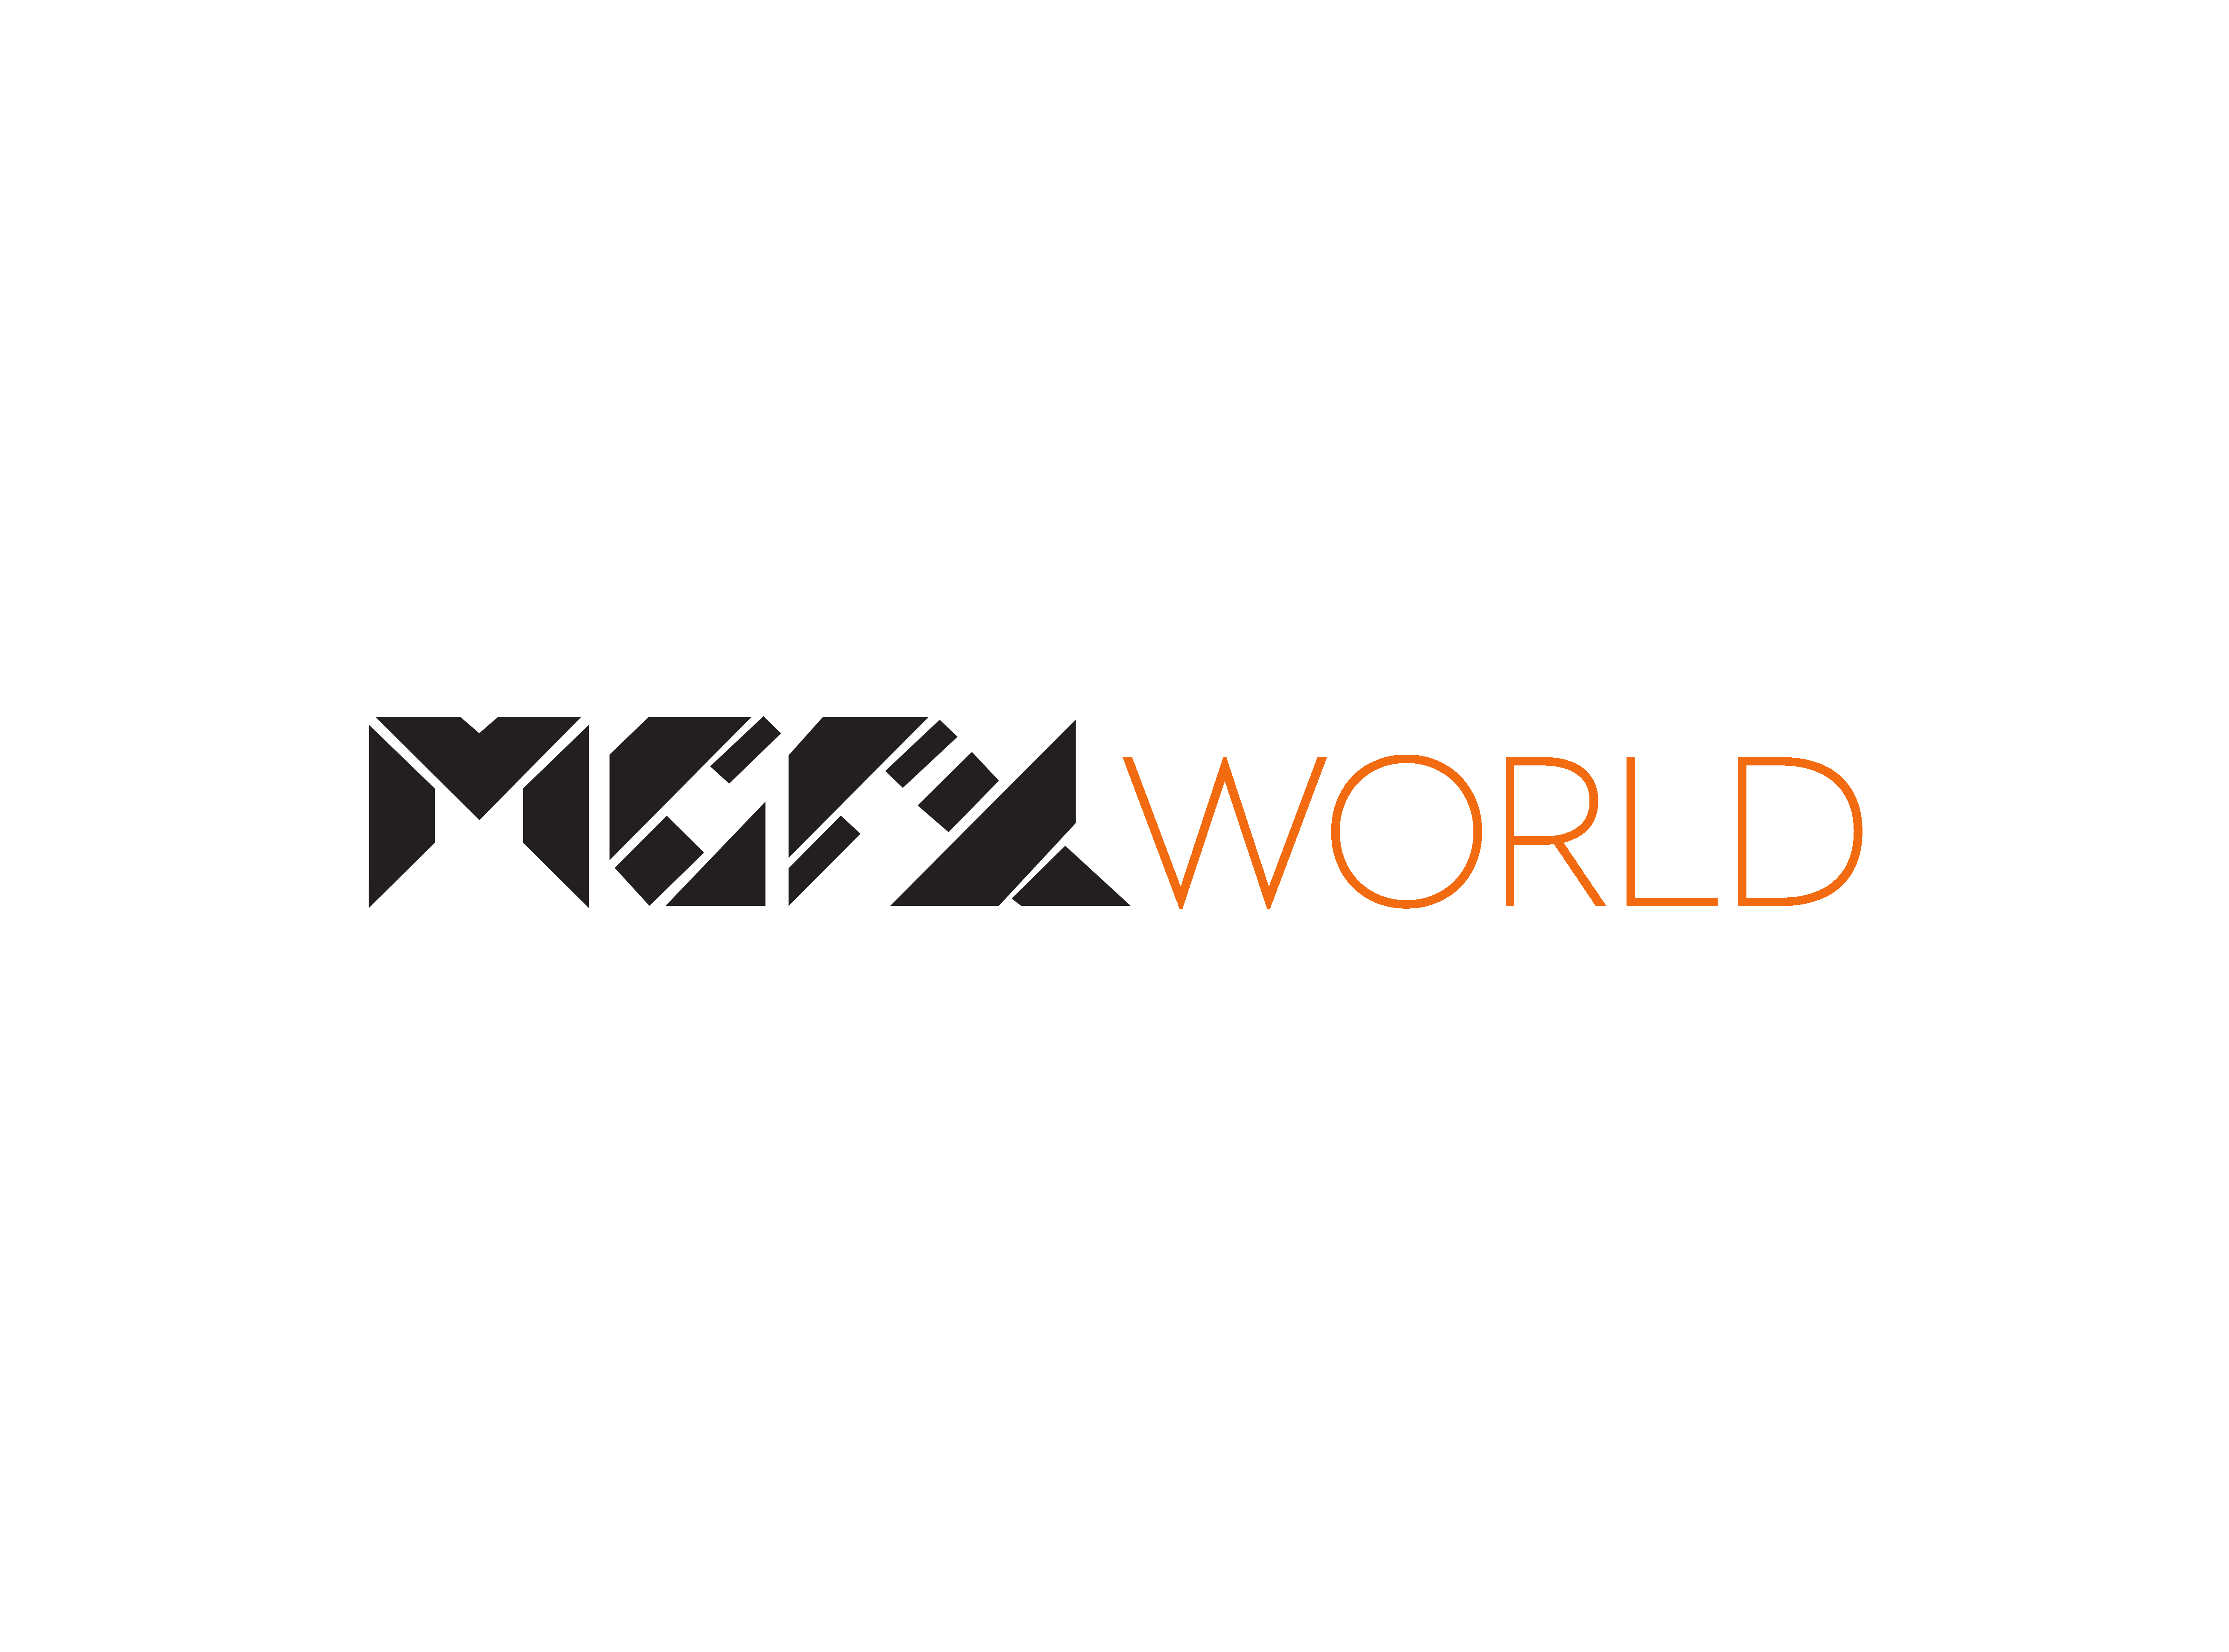 MGFX World